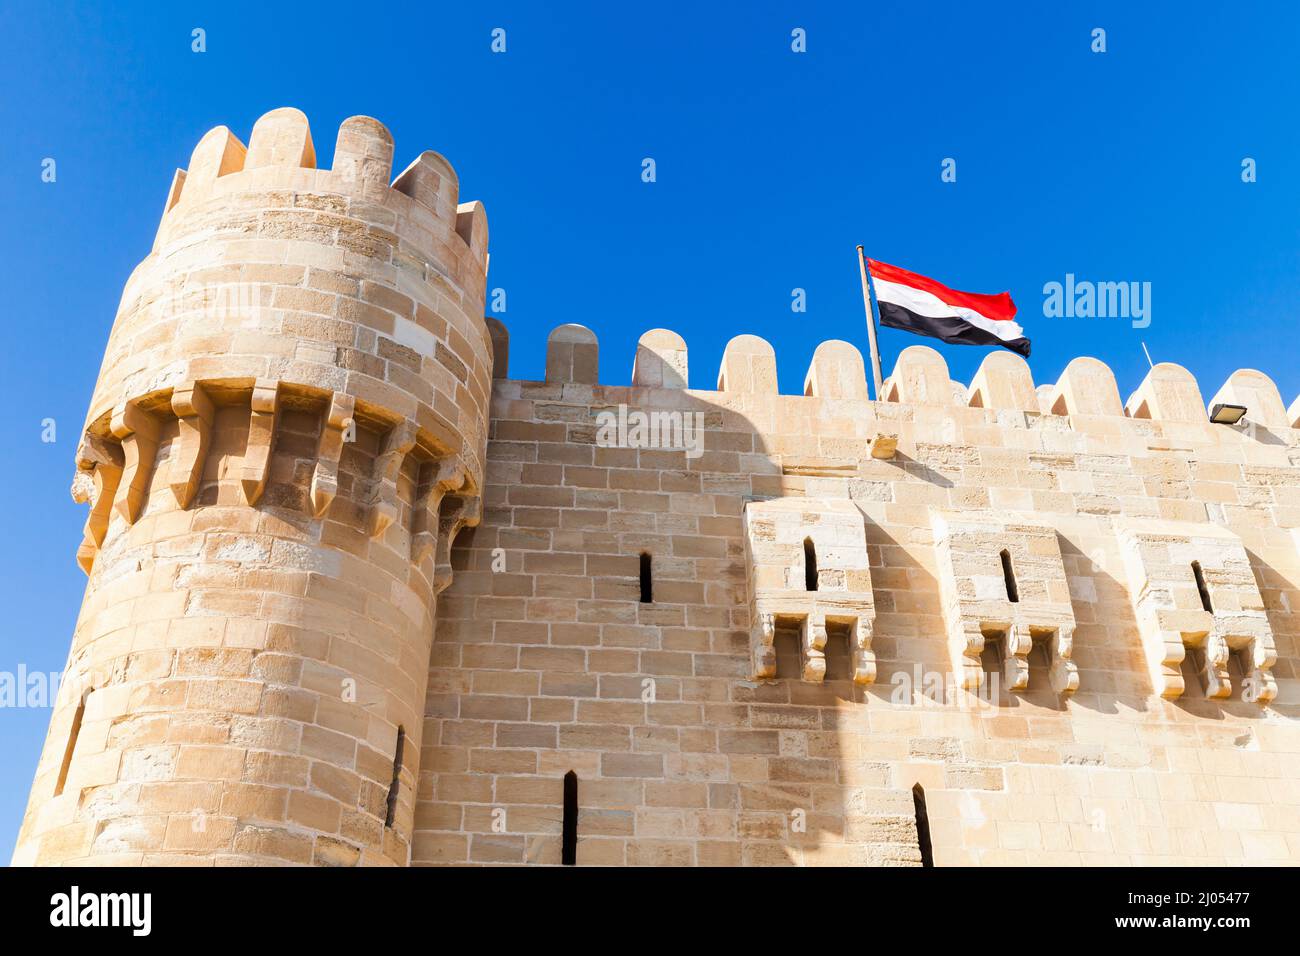 Alexandria, Ägypten. Fassade der Zitadelle von Qaitbay oder der Festung von Qaitbay, eine Verteidigungsfestung aus dem 15.. Jahrhundert an der Mittelmeerküste. It Stockfoto